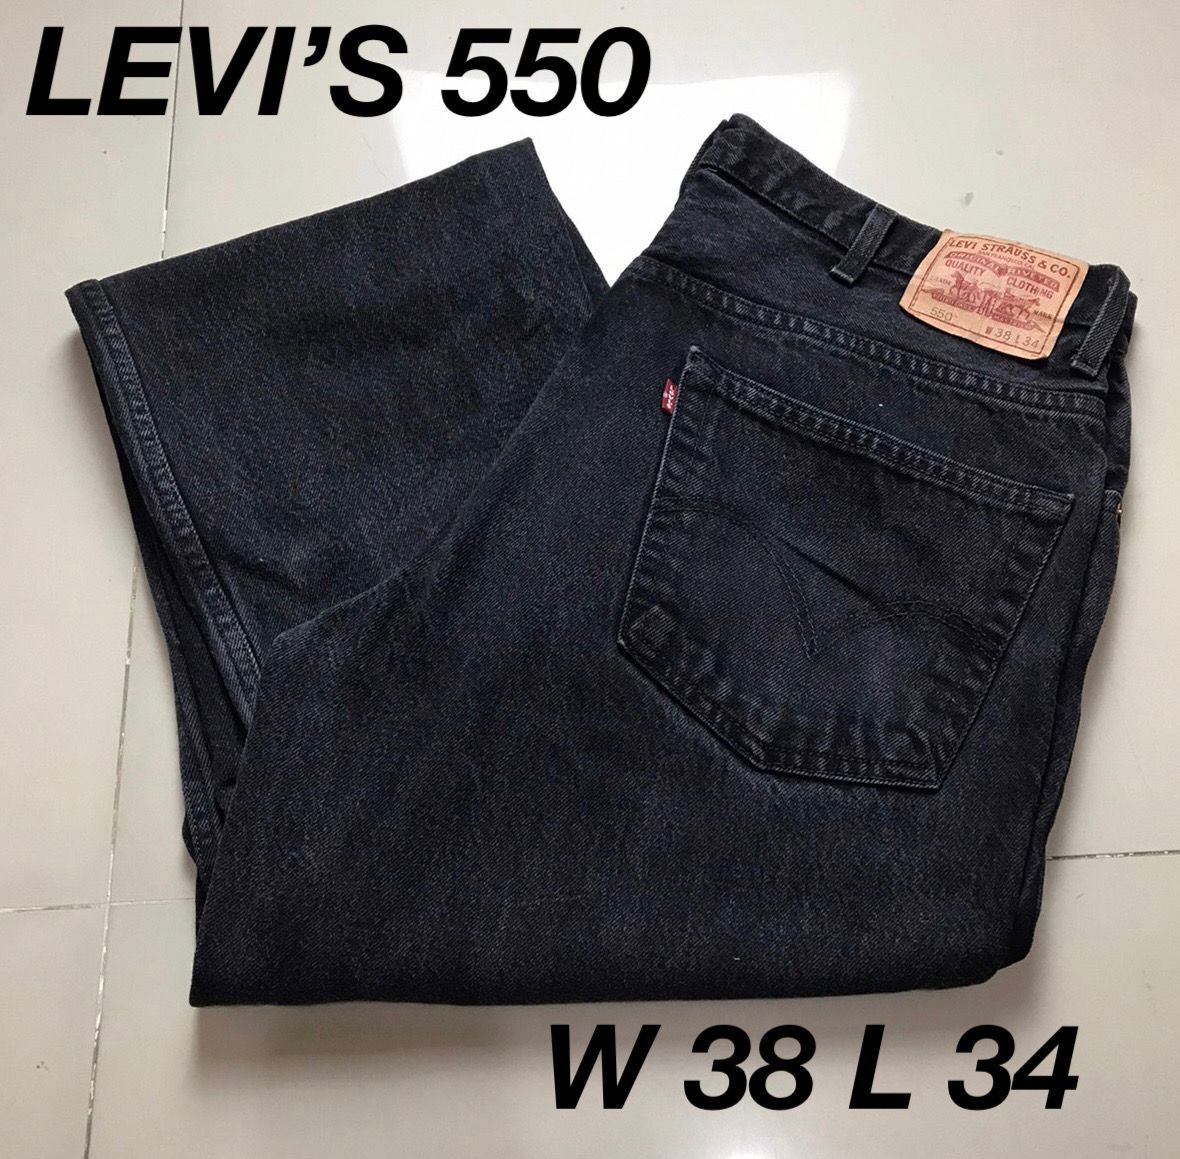 734 【Levi's 550 BLACK】W38 L34 極太 ワイド バギー-